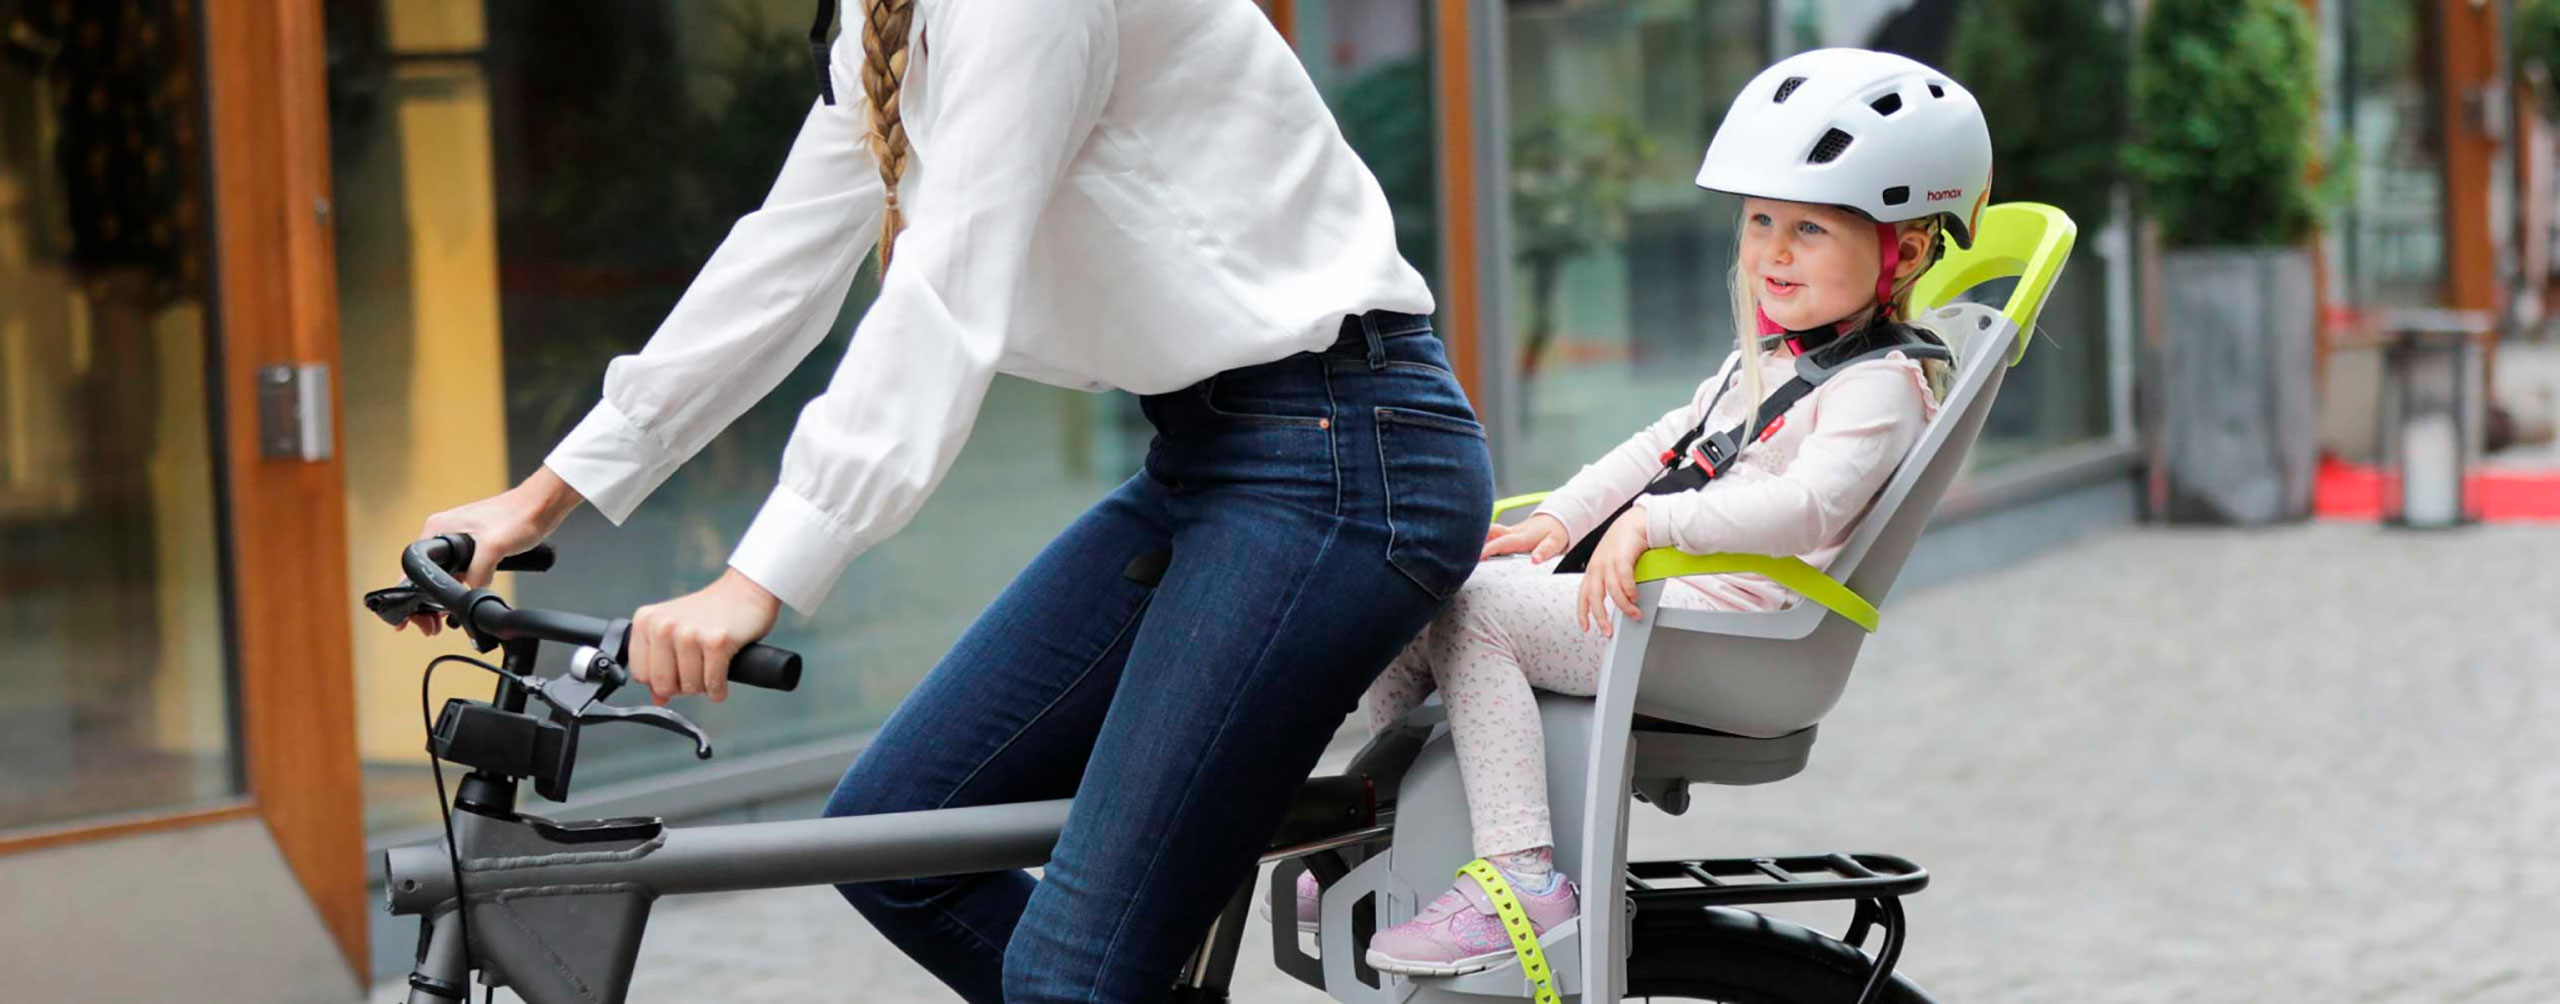 Все, что нужно знать, приобретая детское велокресло